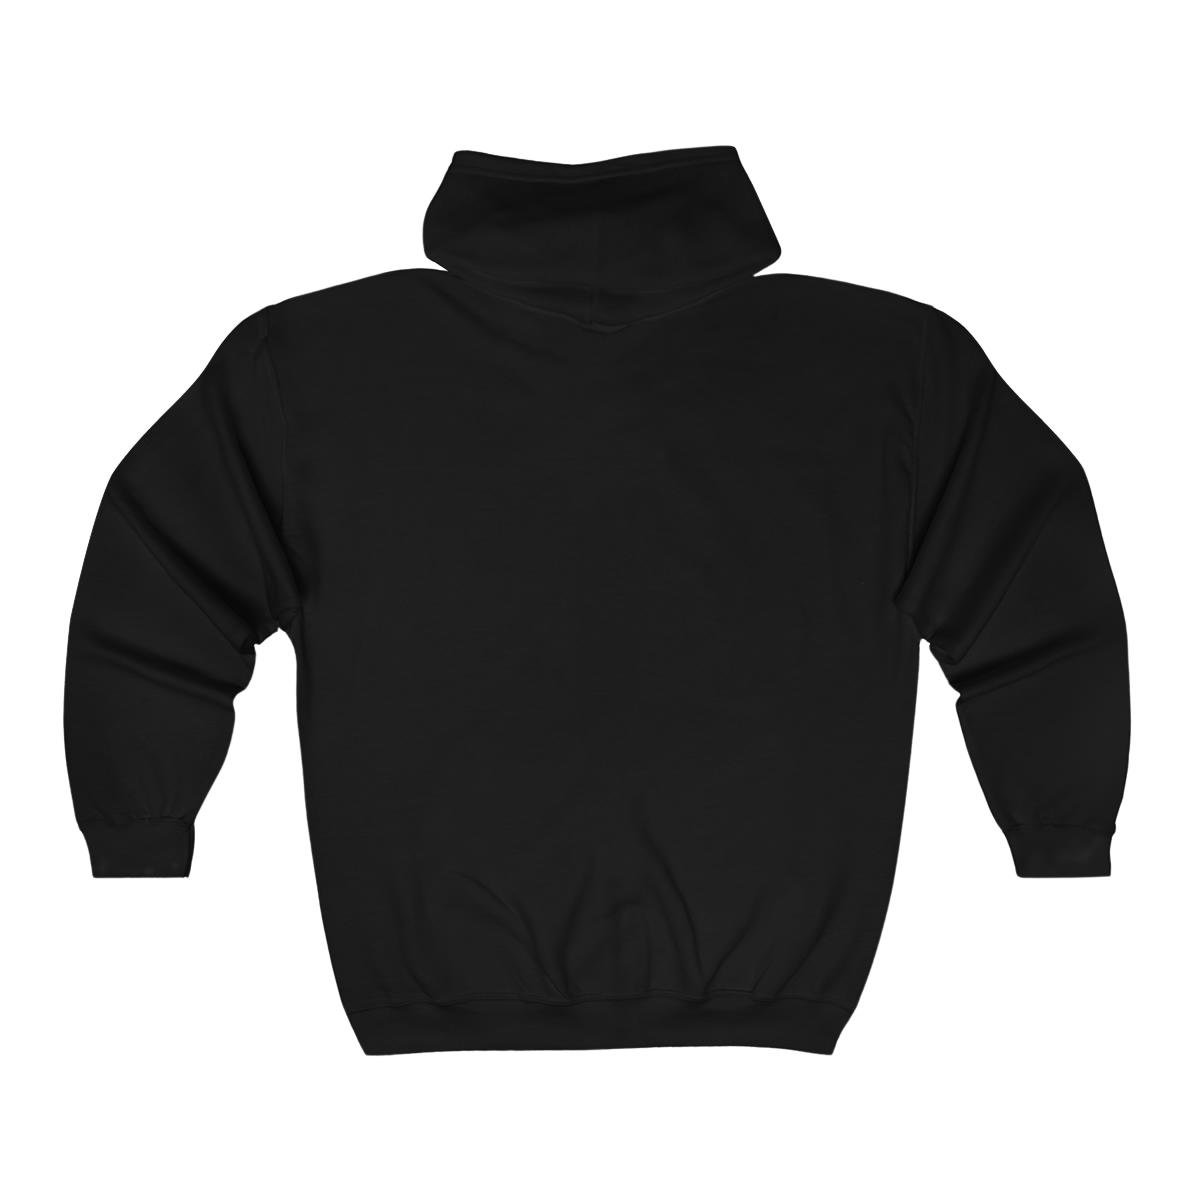 Mawcore Crest Full Zip Hooded Sweatshirt